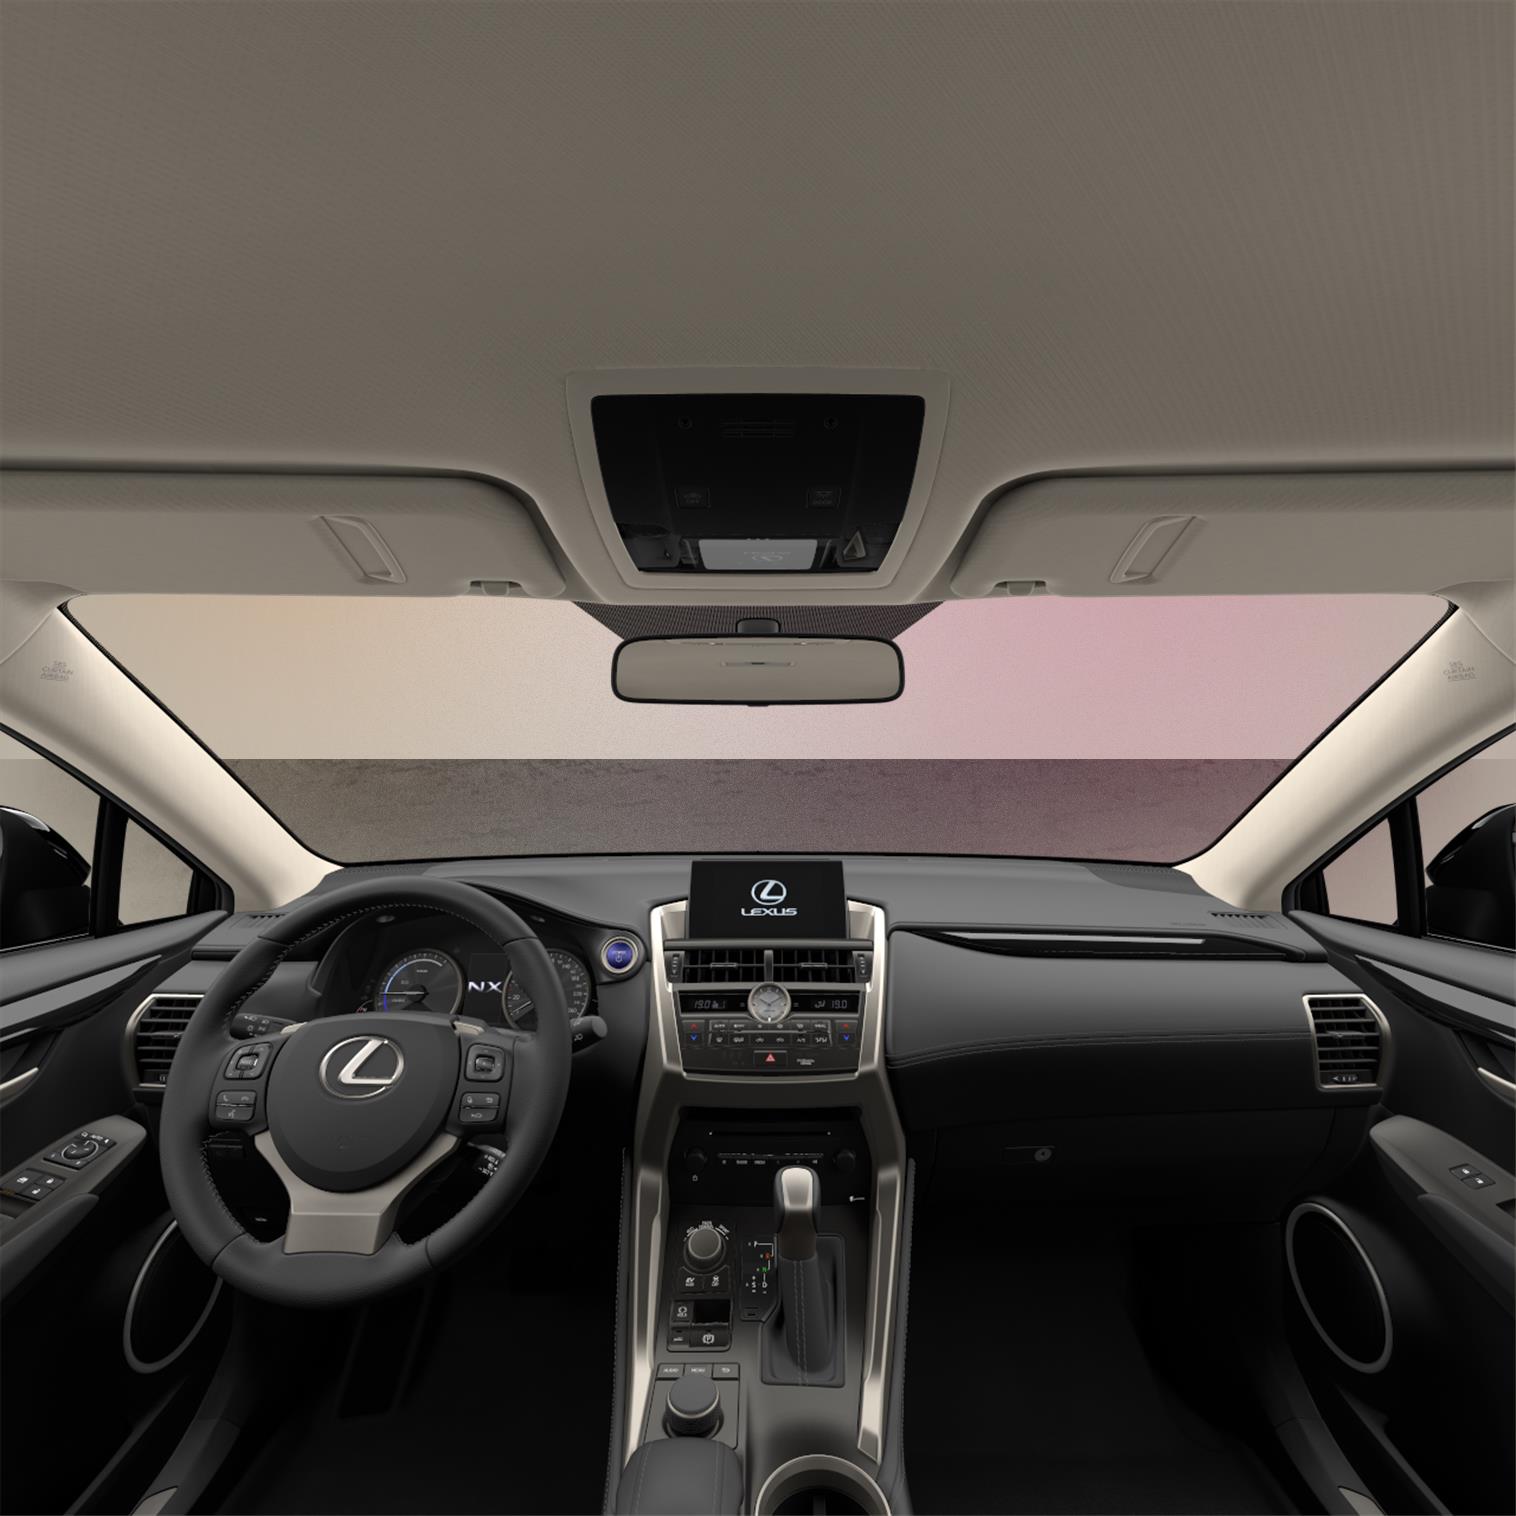 Lexus NX 300h S interior front Dashboard view